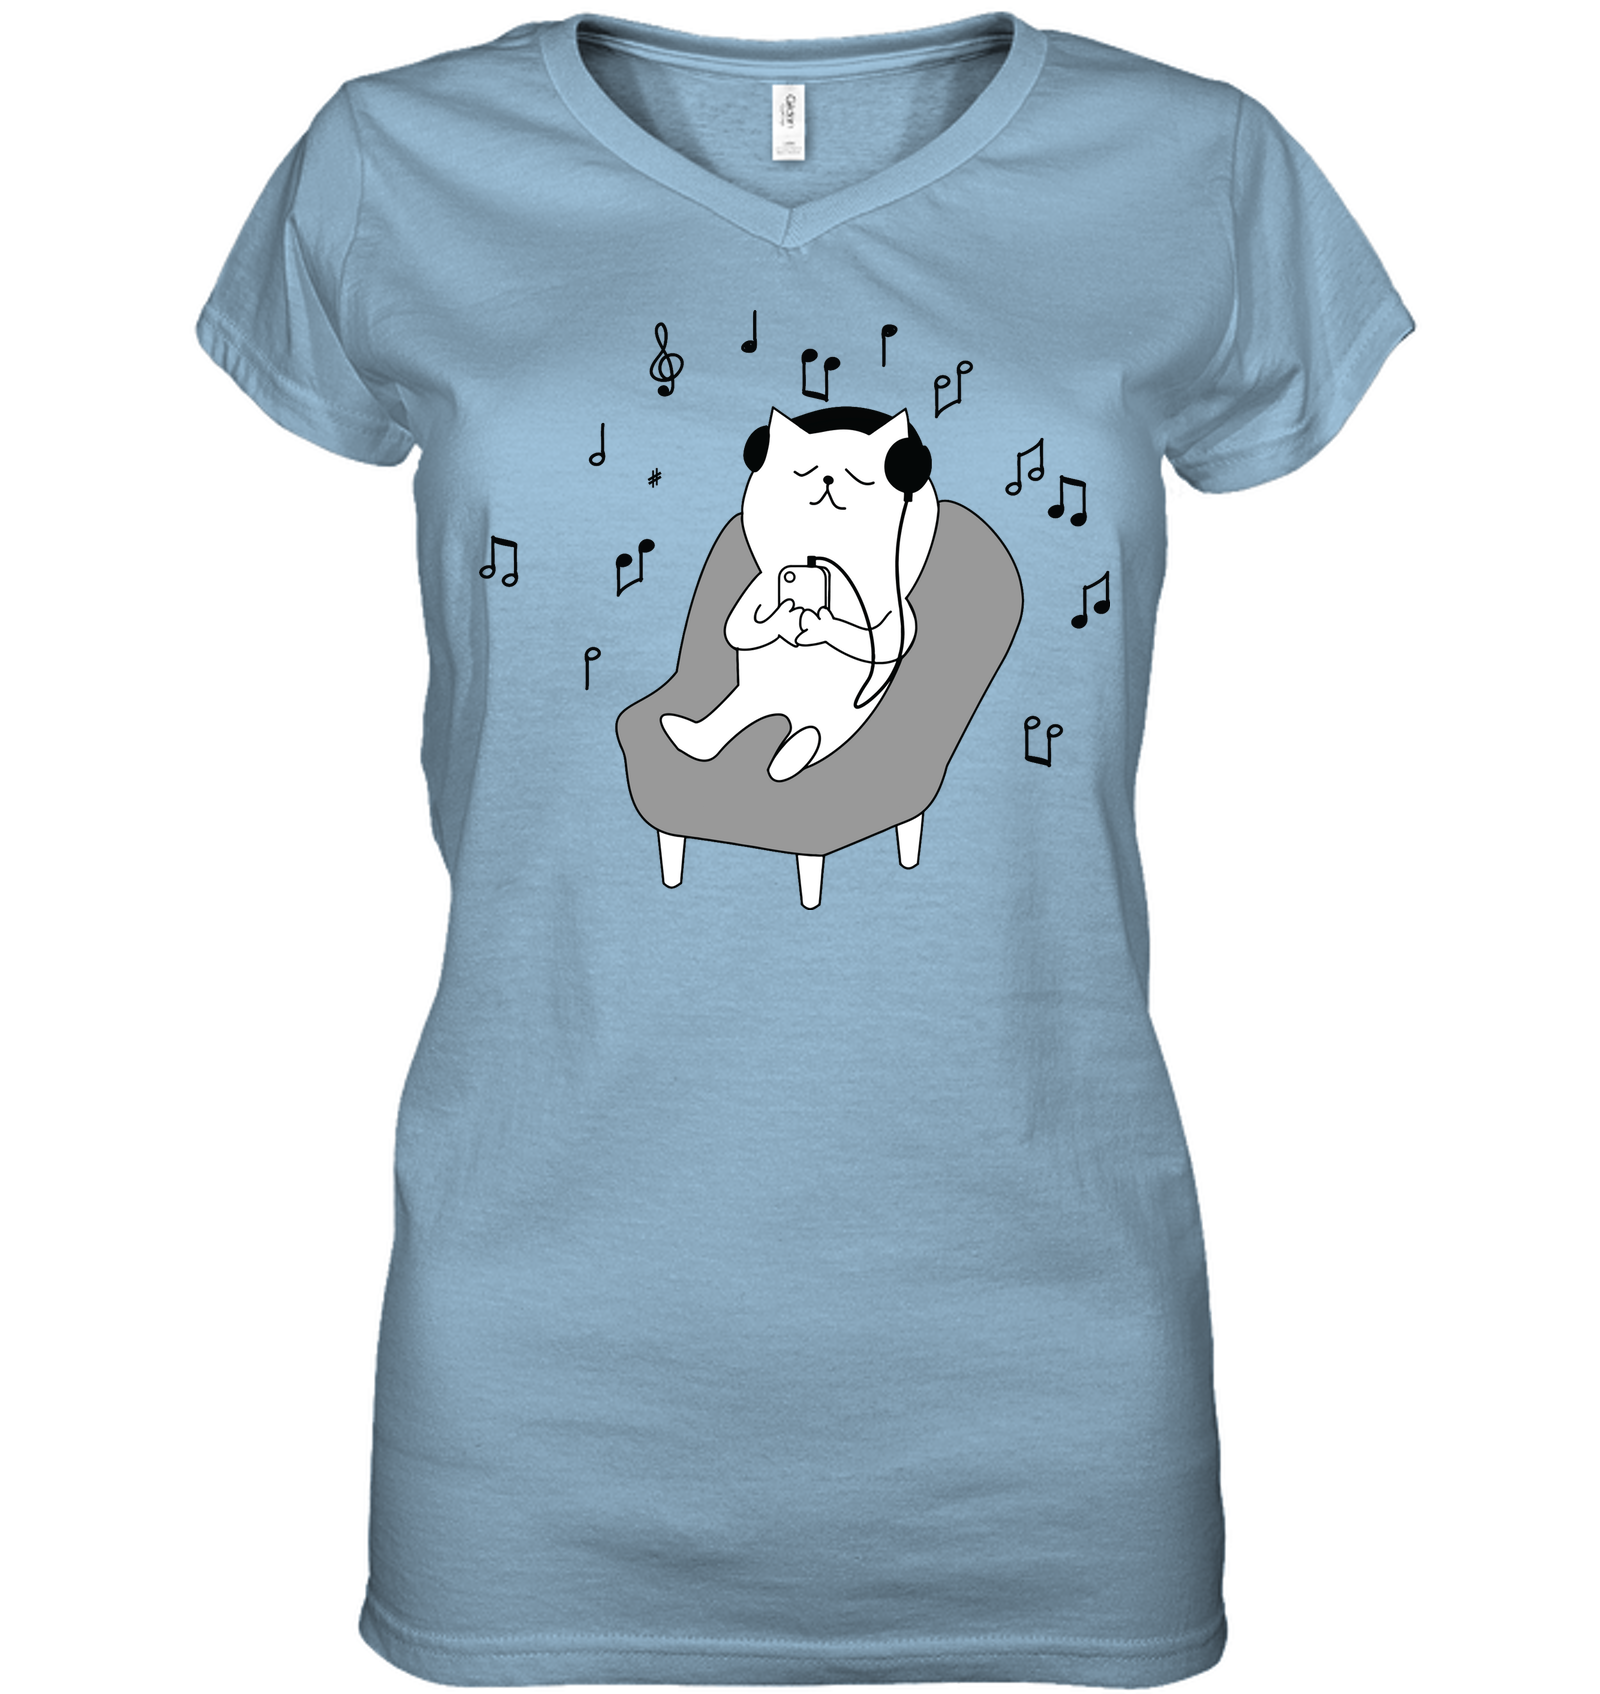 Chilin Kitty - Hanes Women's Nano-T® V-Neck T-Shirt